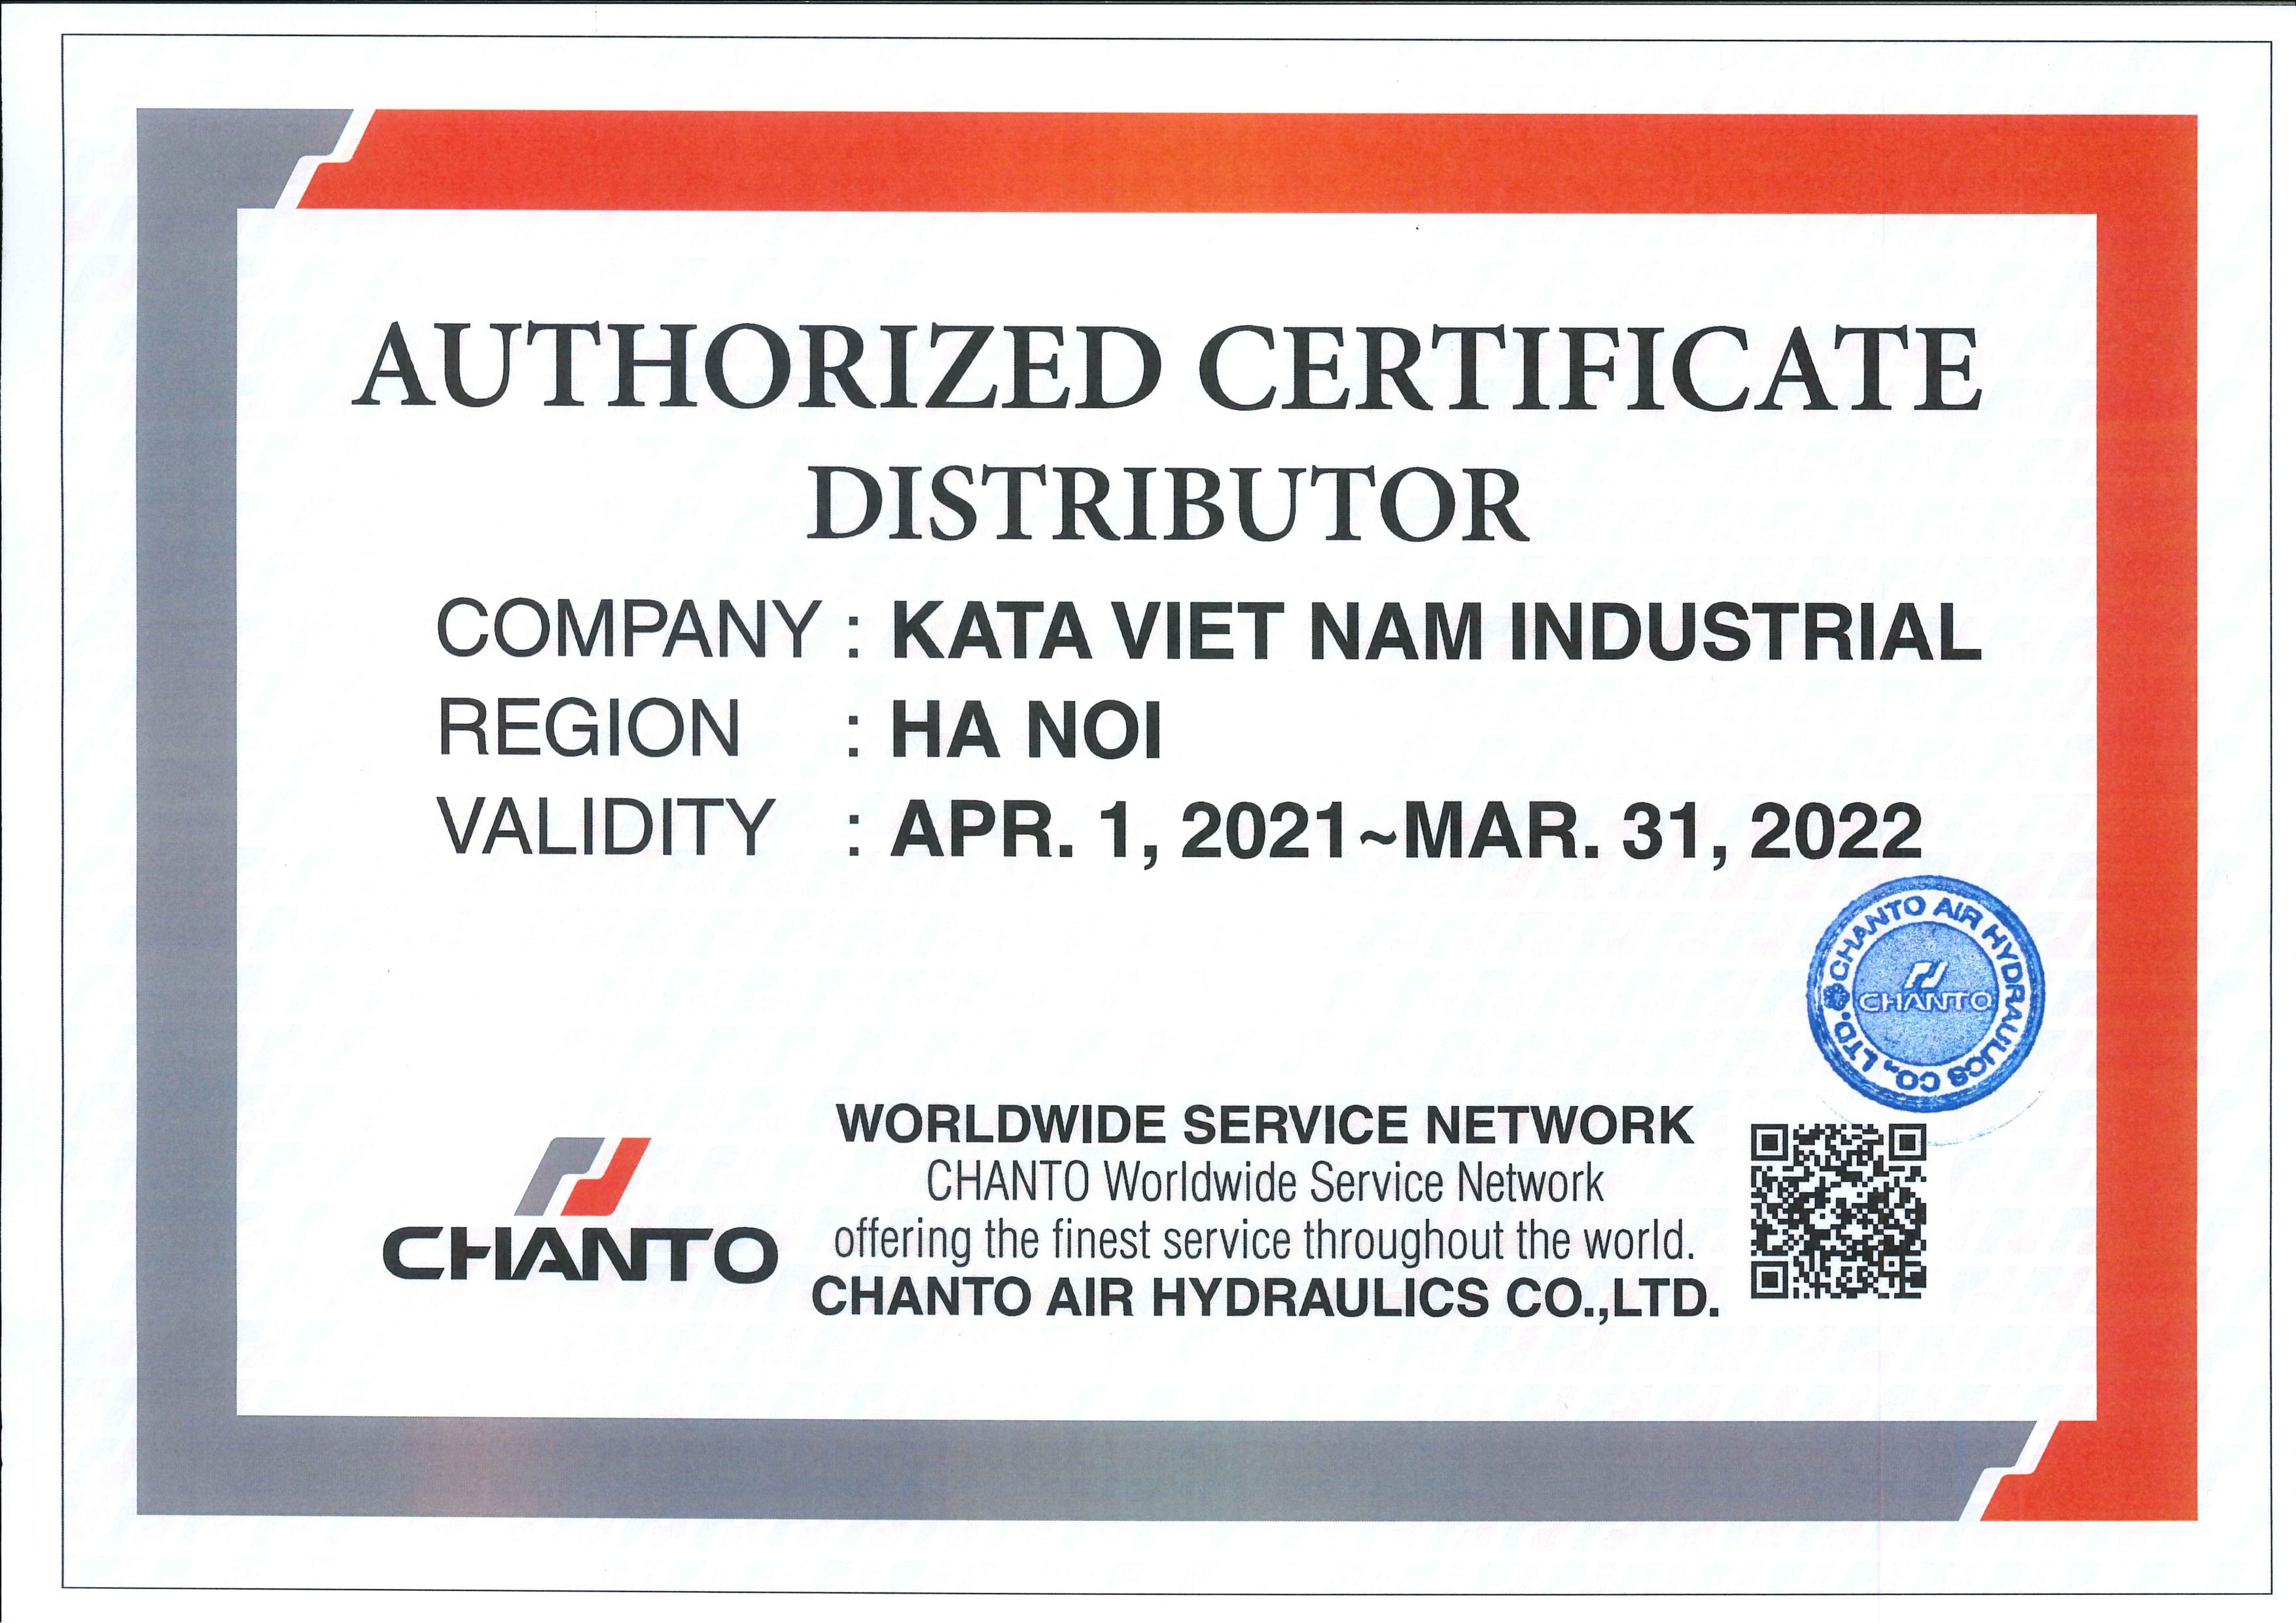 Công ty TNHH Công Nghiệp Kata Việt Nam đại lý phân phối cung cấp các sản phẩm khí nén của CHANTO AIR HYDRAULICS CO., LTD. tại Việt Nam